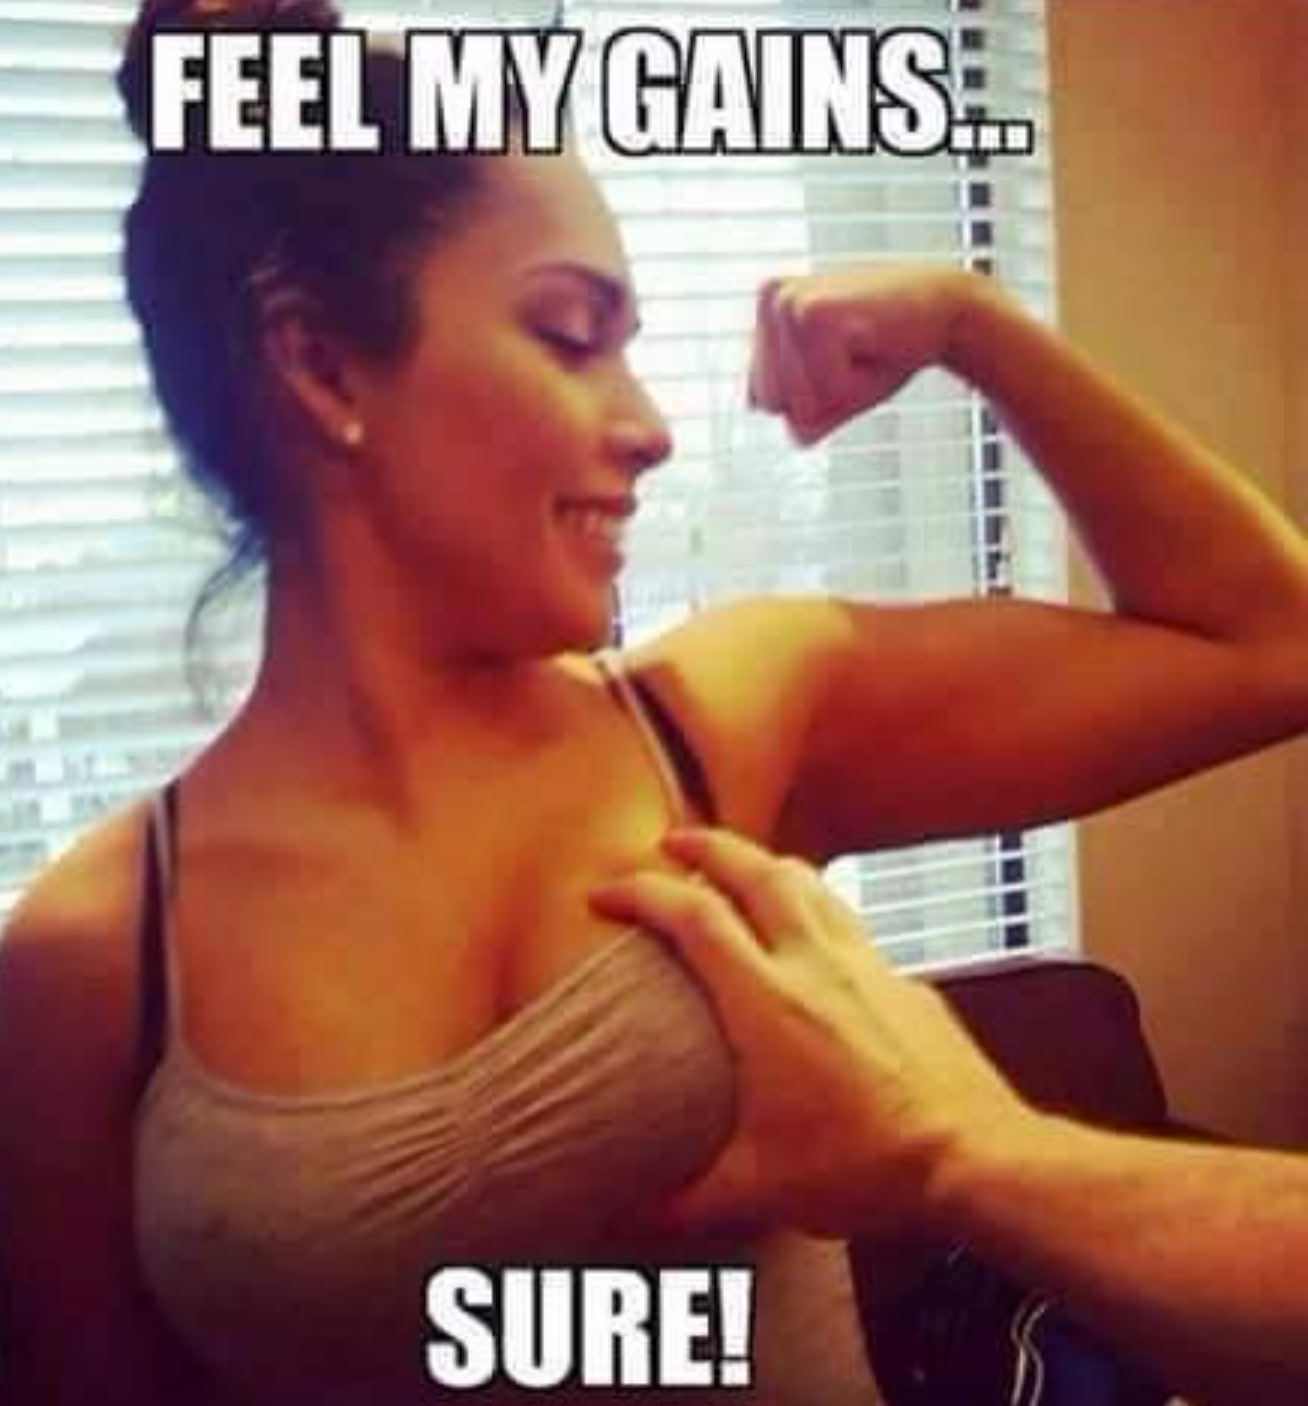 feel my gains sure - Feel My Gains. Sure!